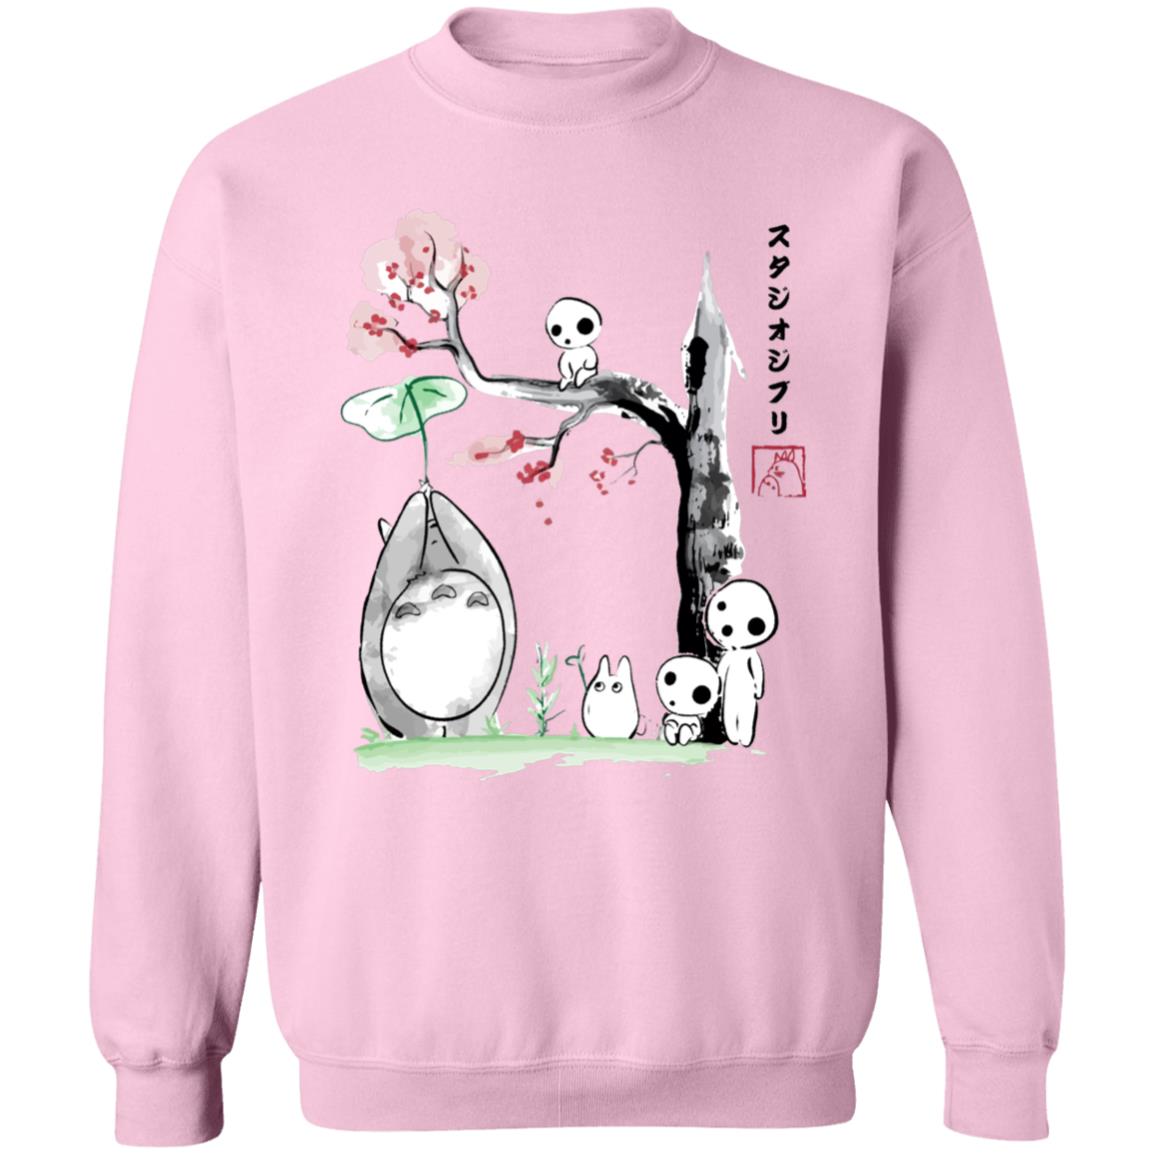 Totoro and the Tree Spirits Sweatshirt